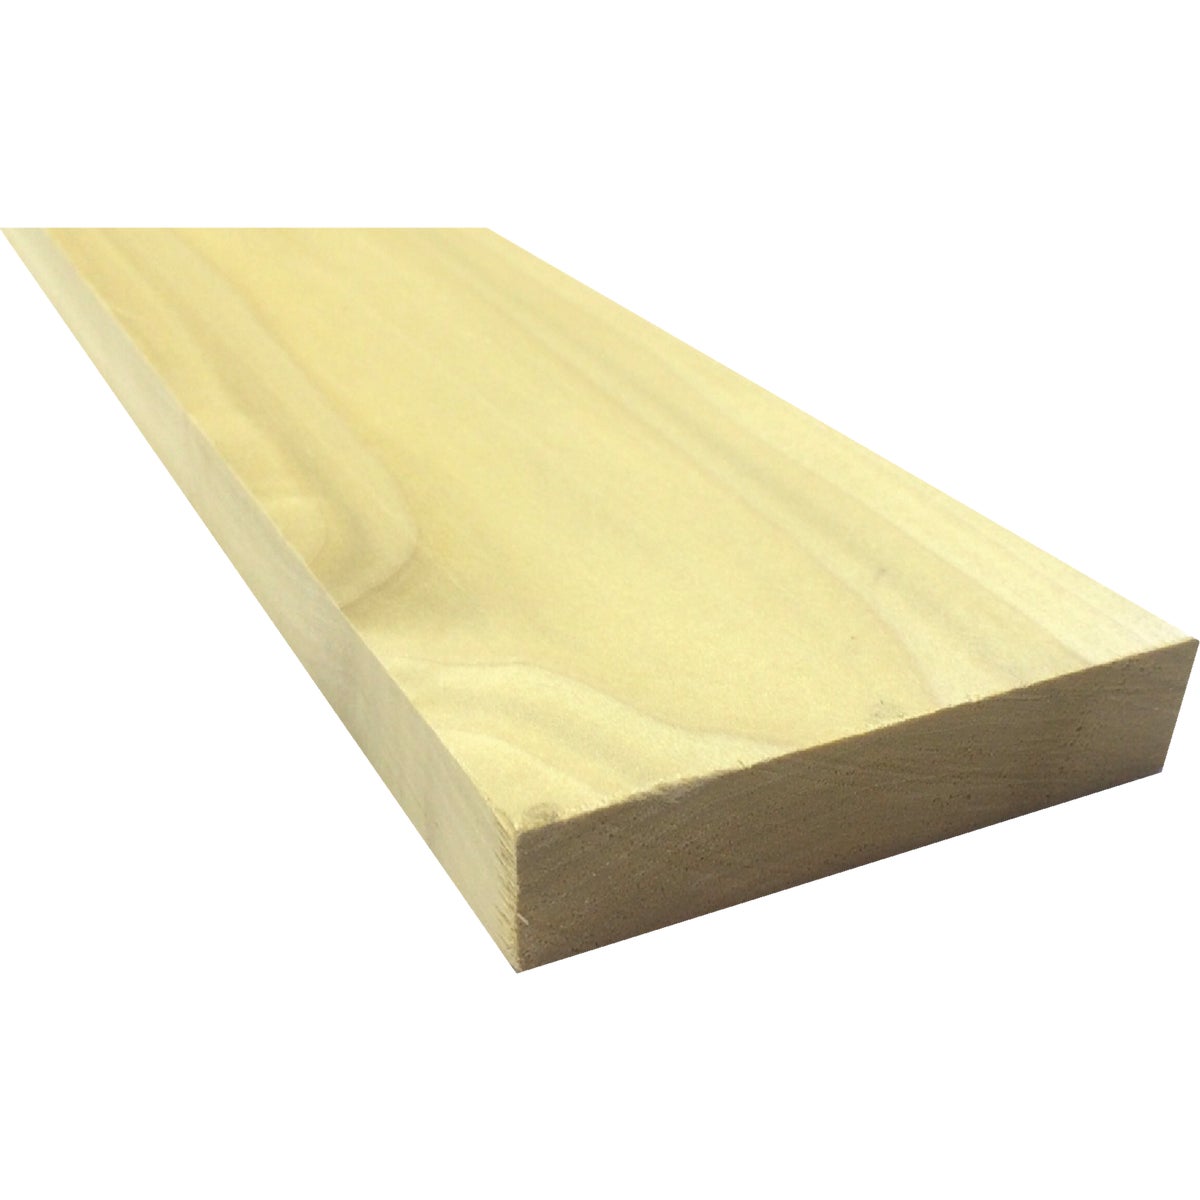 Waddell 1 In. x 4 In. x 3 Ft. Poplar Wood Board